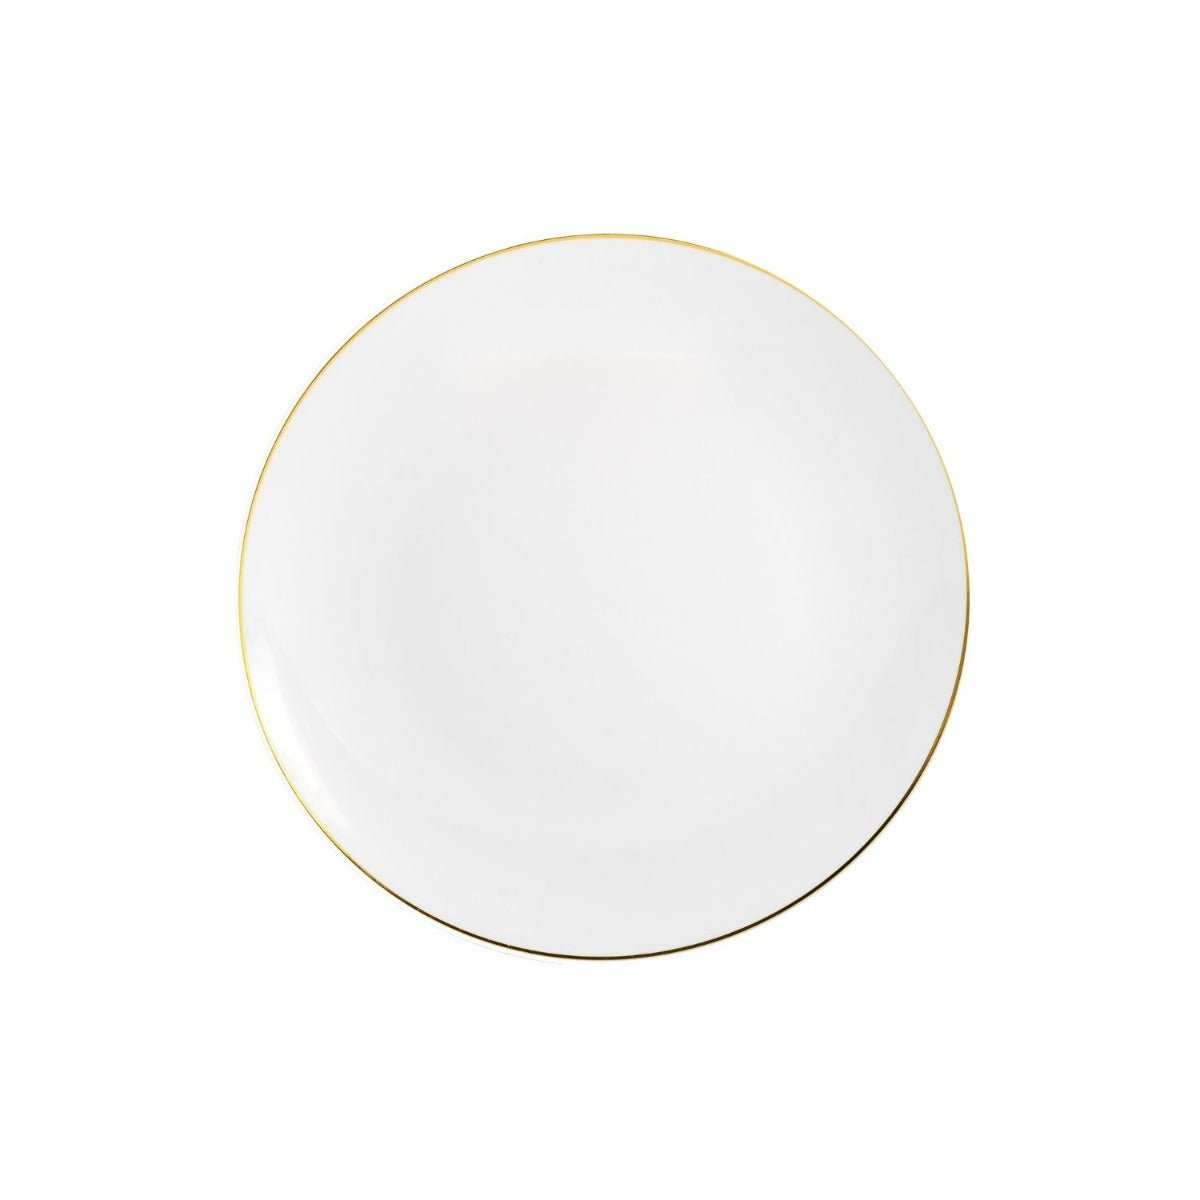 8" Classic Gold Design Plastic Plates (120 Count)